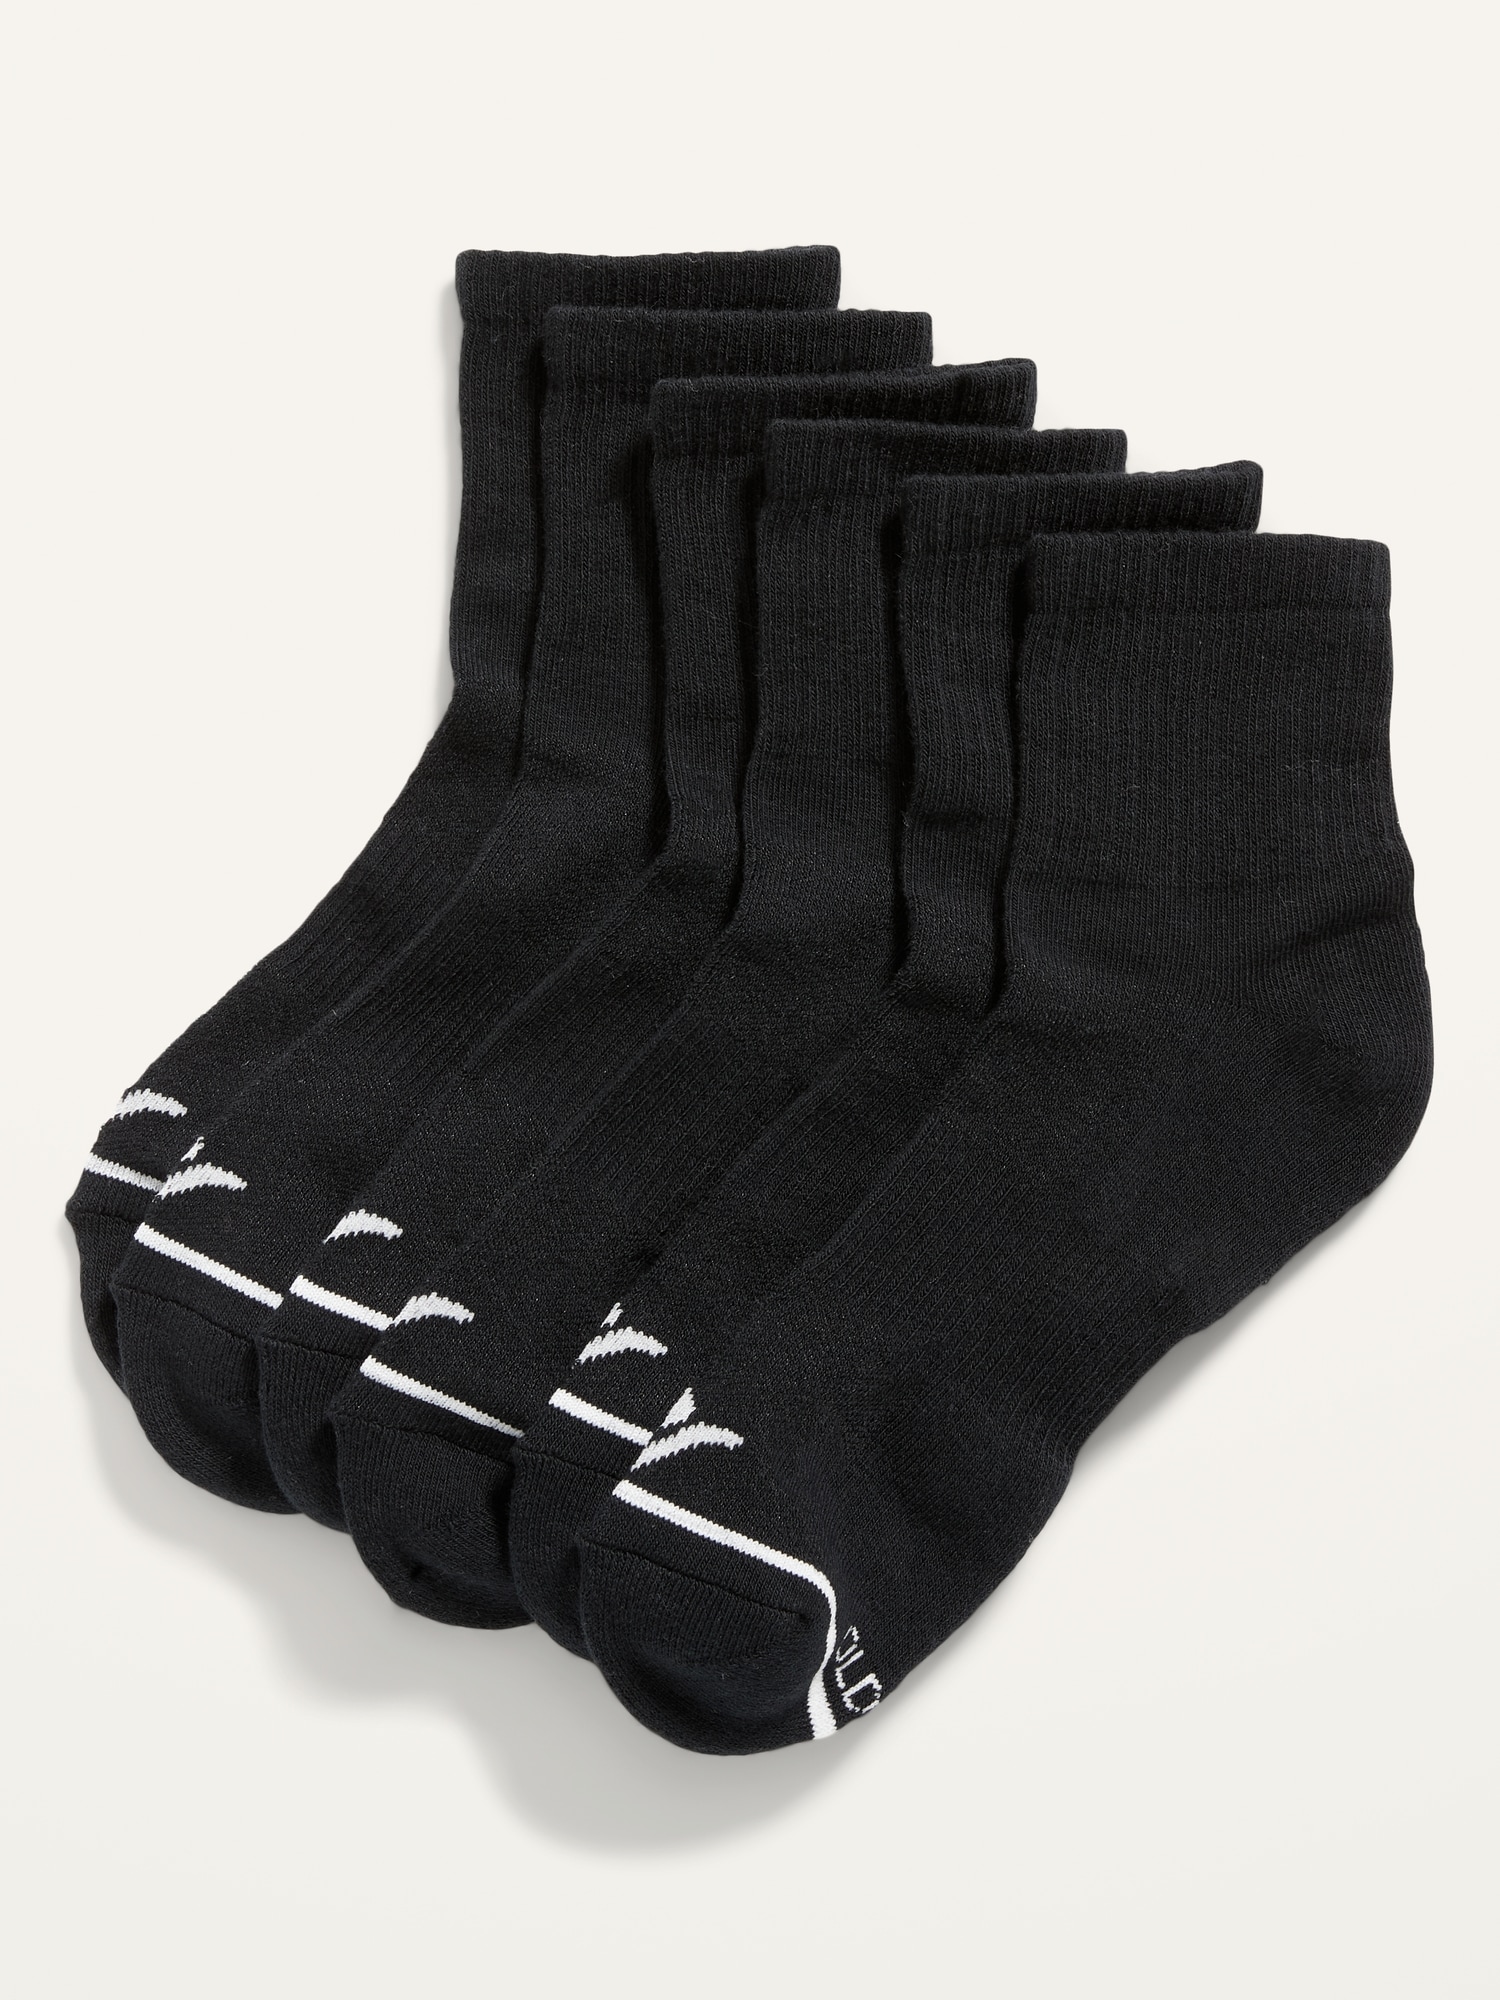 Member's Mark 10-Pack Quarter Top Sport Socks